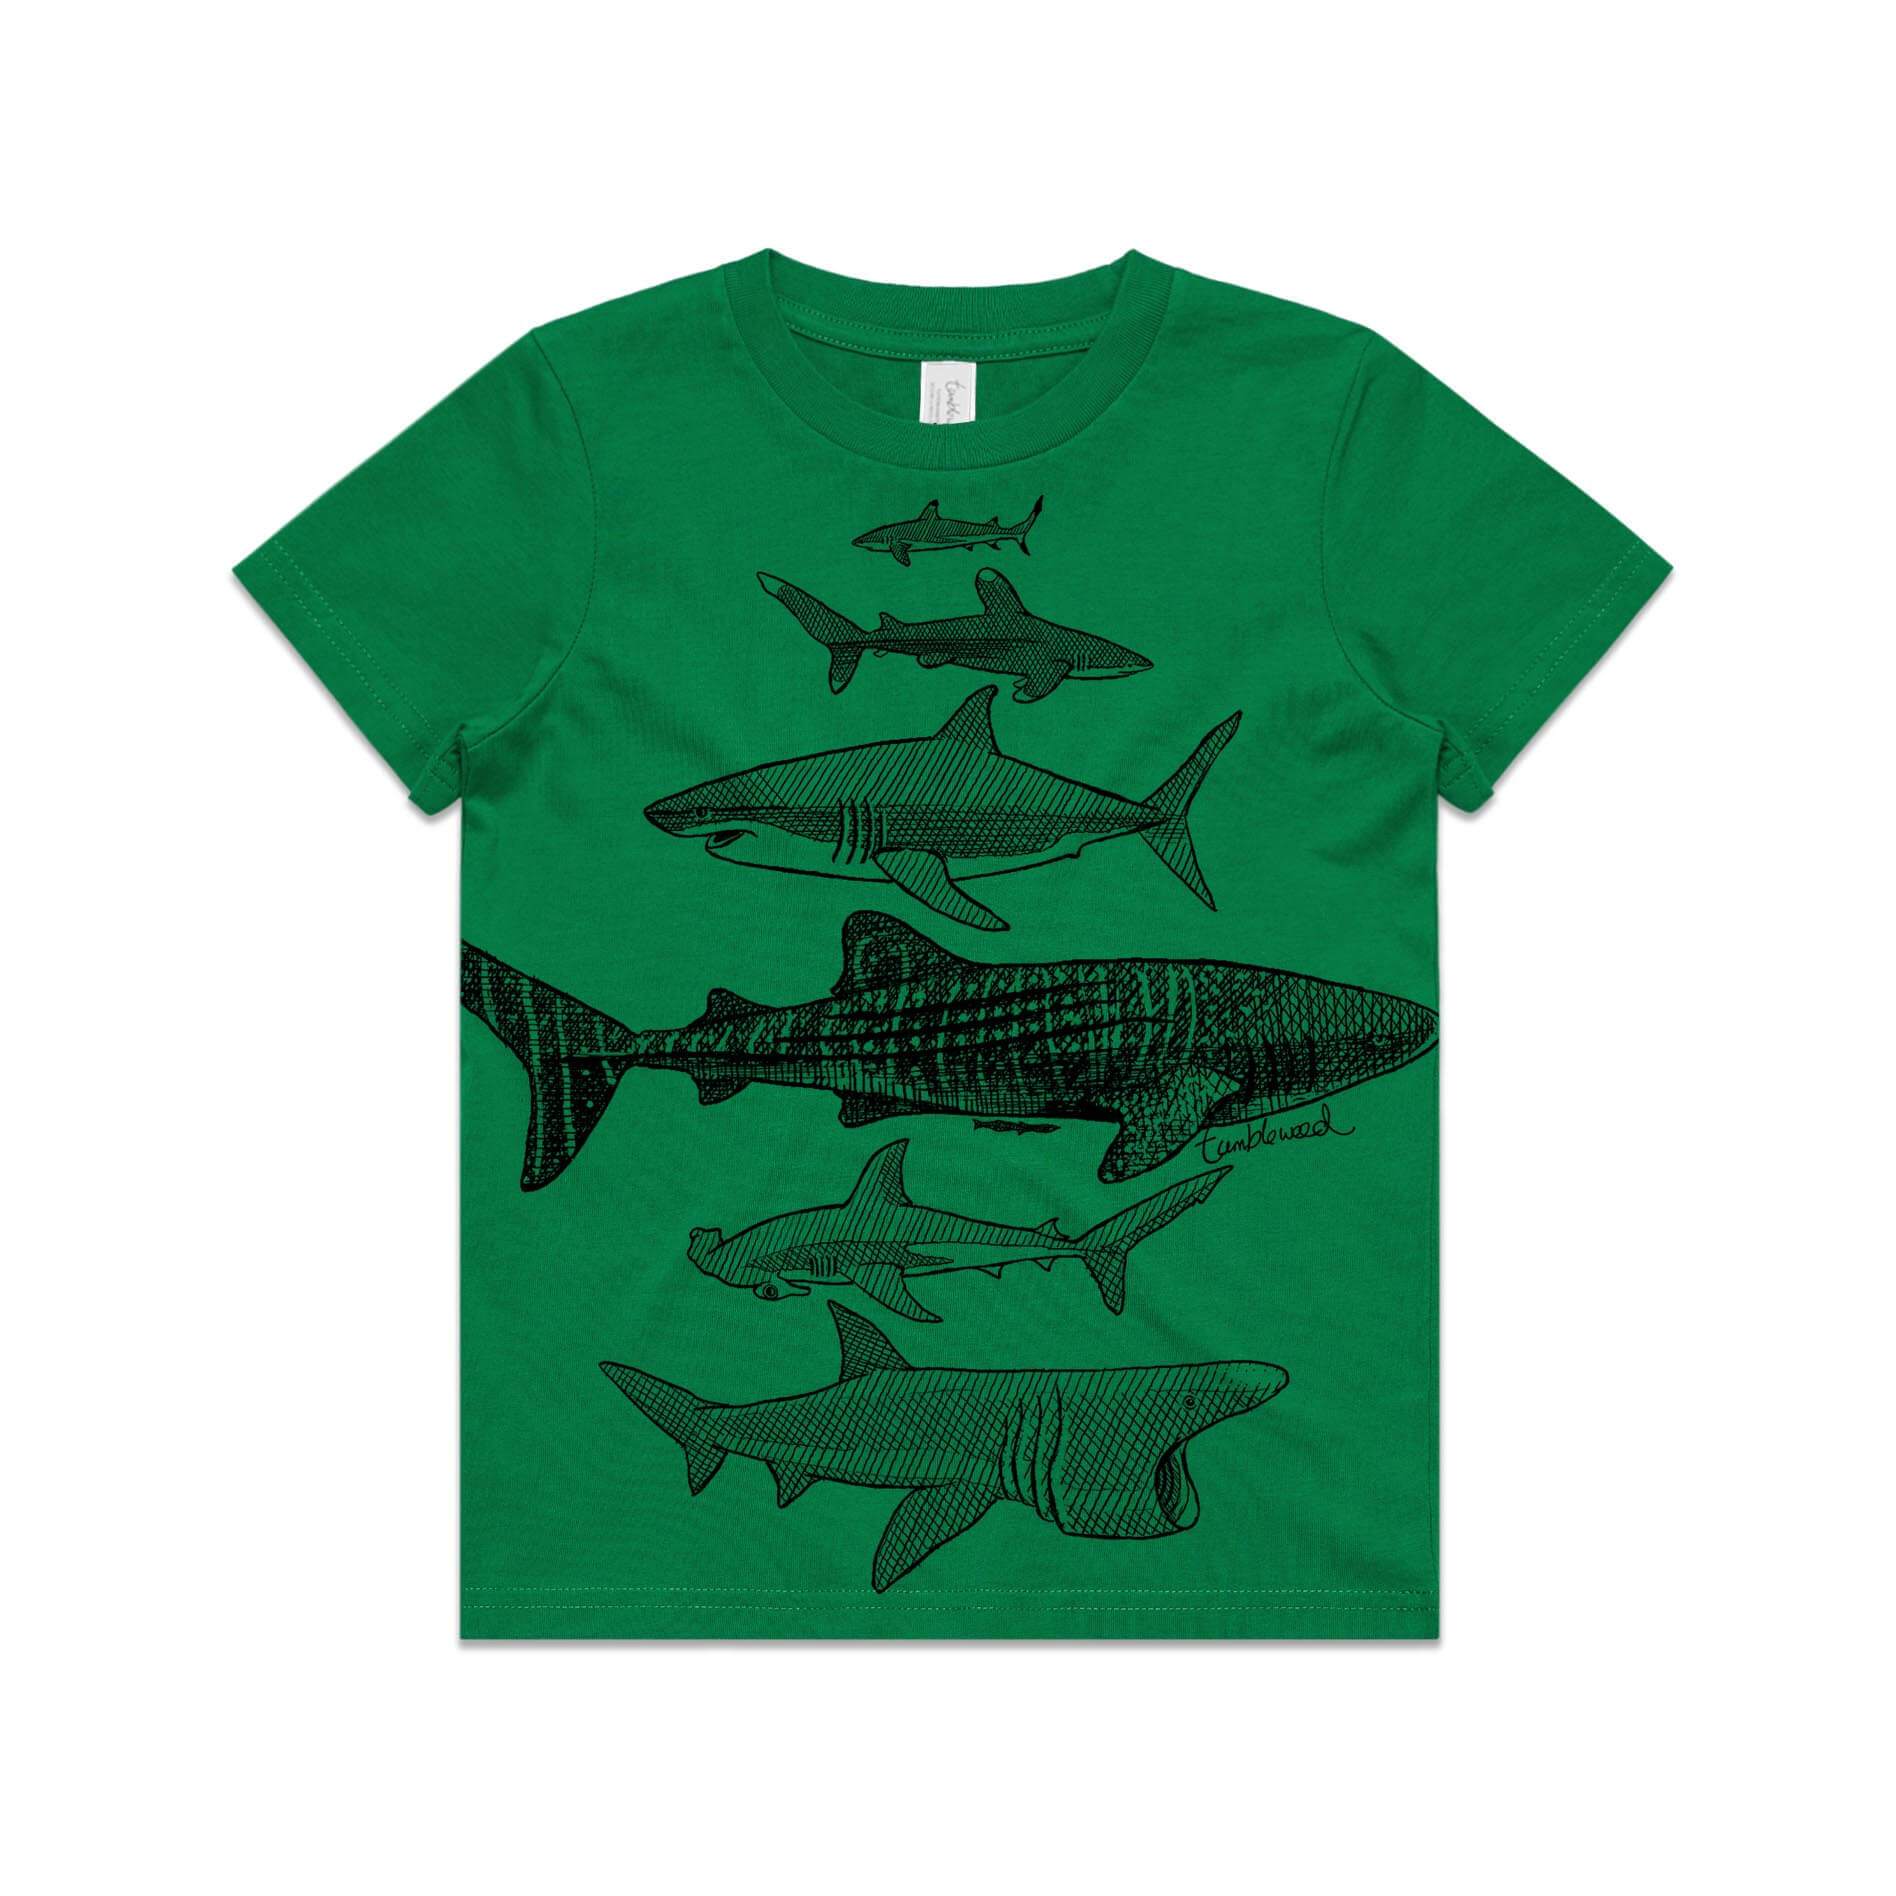 Green, cotton kids' t-shirt with screen printed Kids shark design.